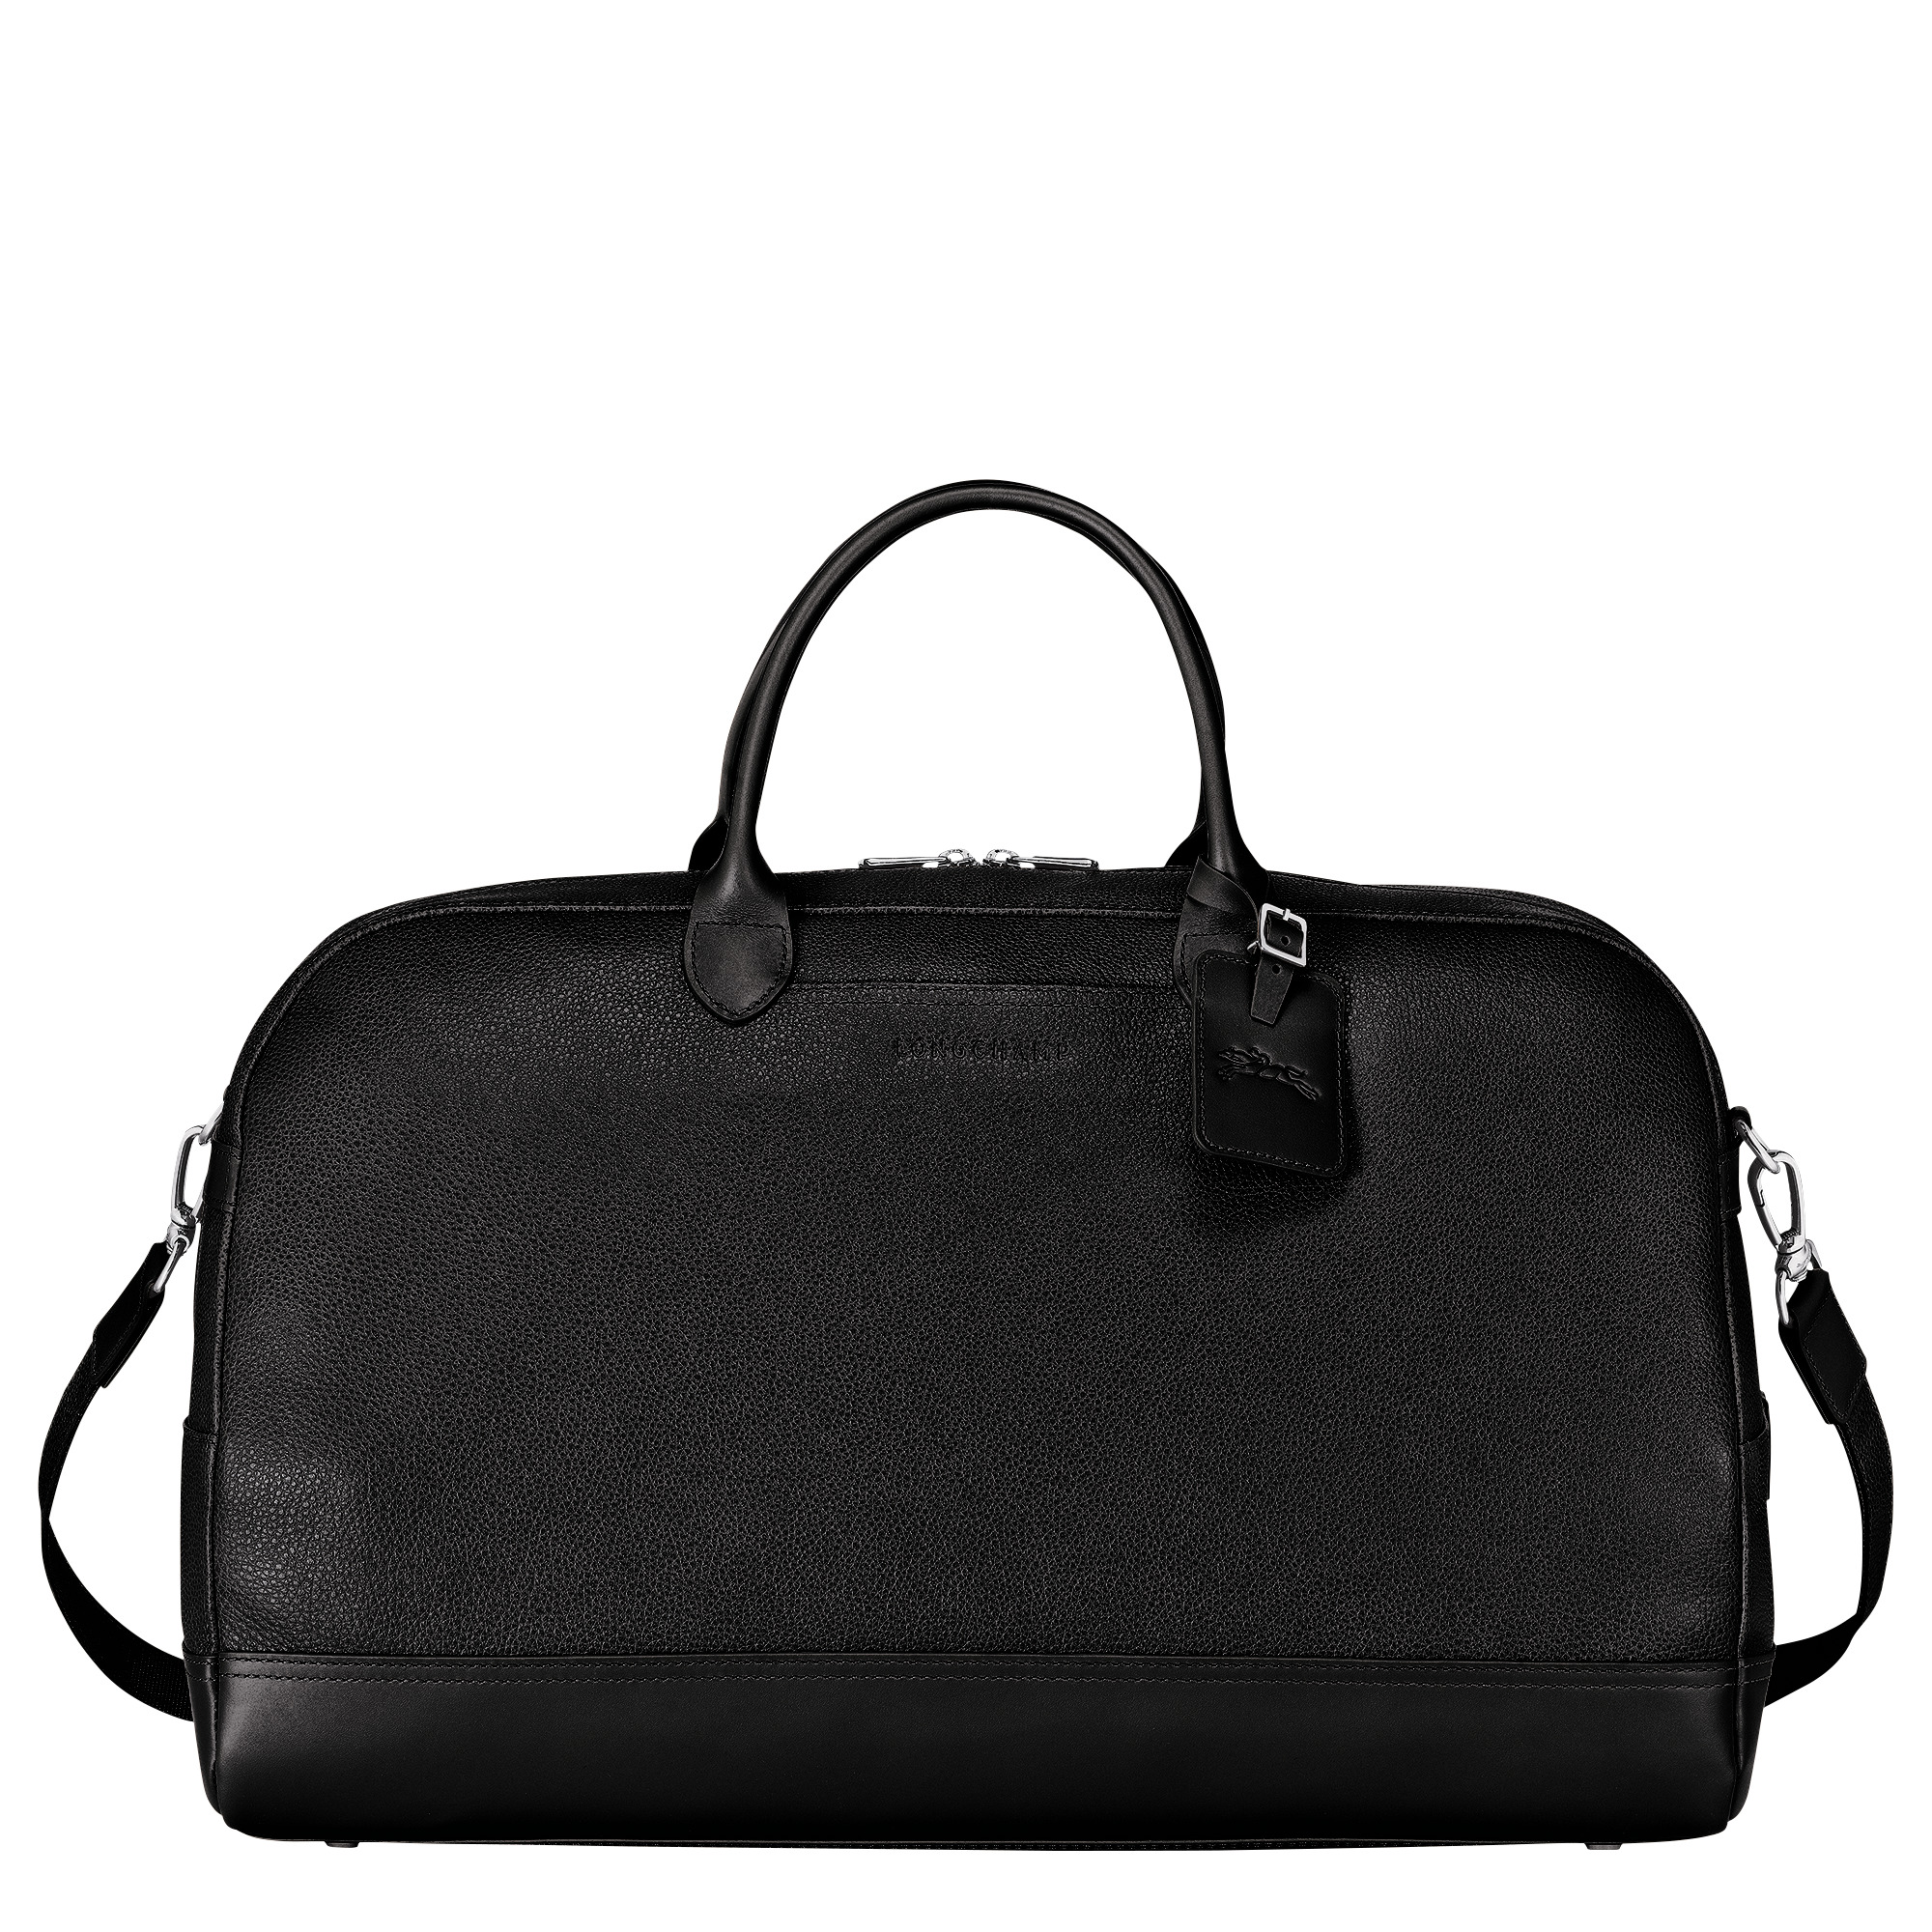 Le Foulonné M Travel bag Black - Leather - 1